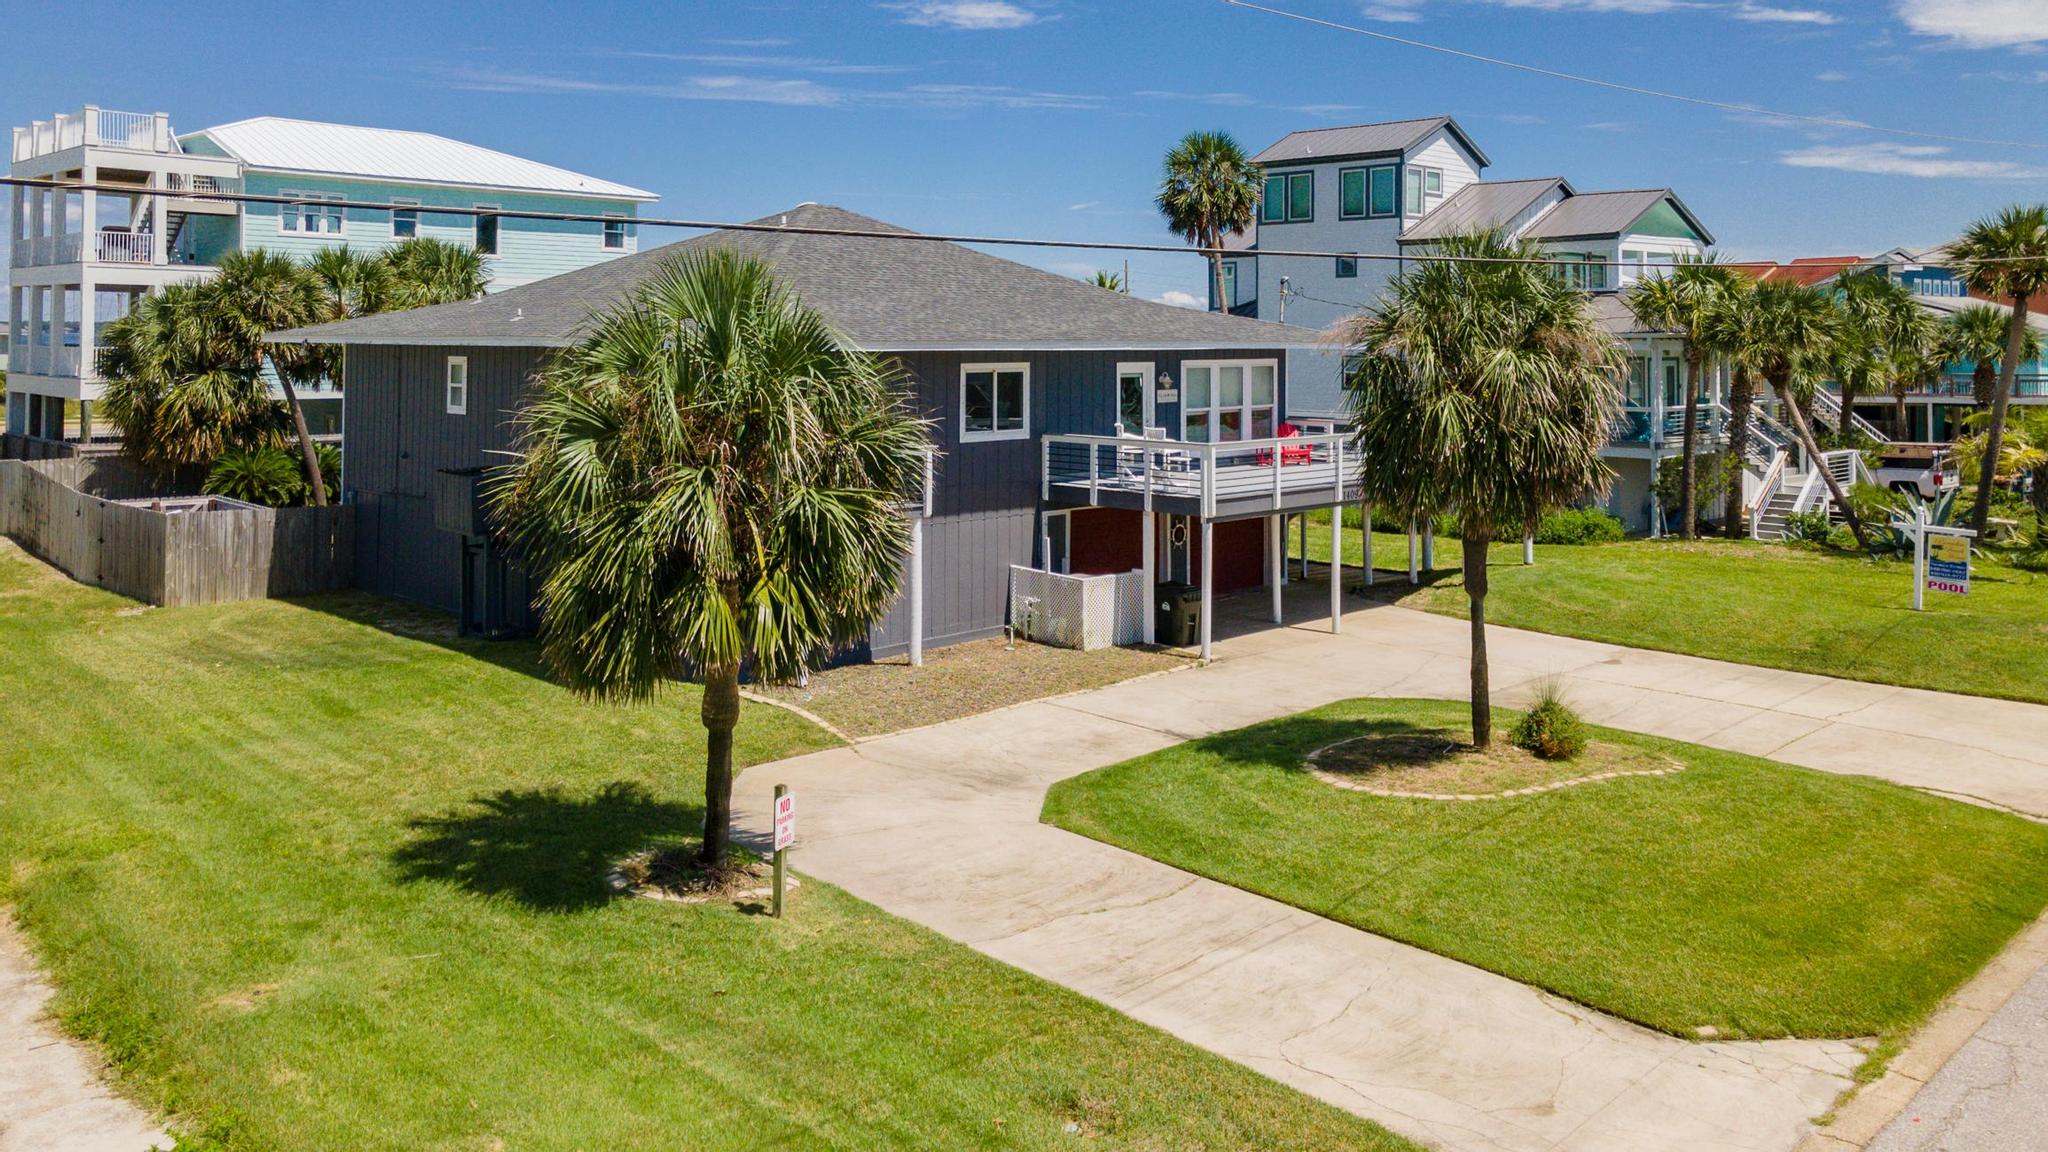 Maldonado 1409 - The Hip * Nautic House / Cottage rental in Pensacola Beach House Rentals in Pensacola Beach Florida - #36